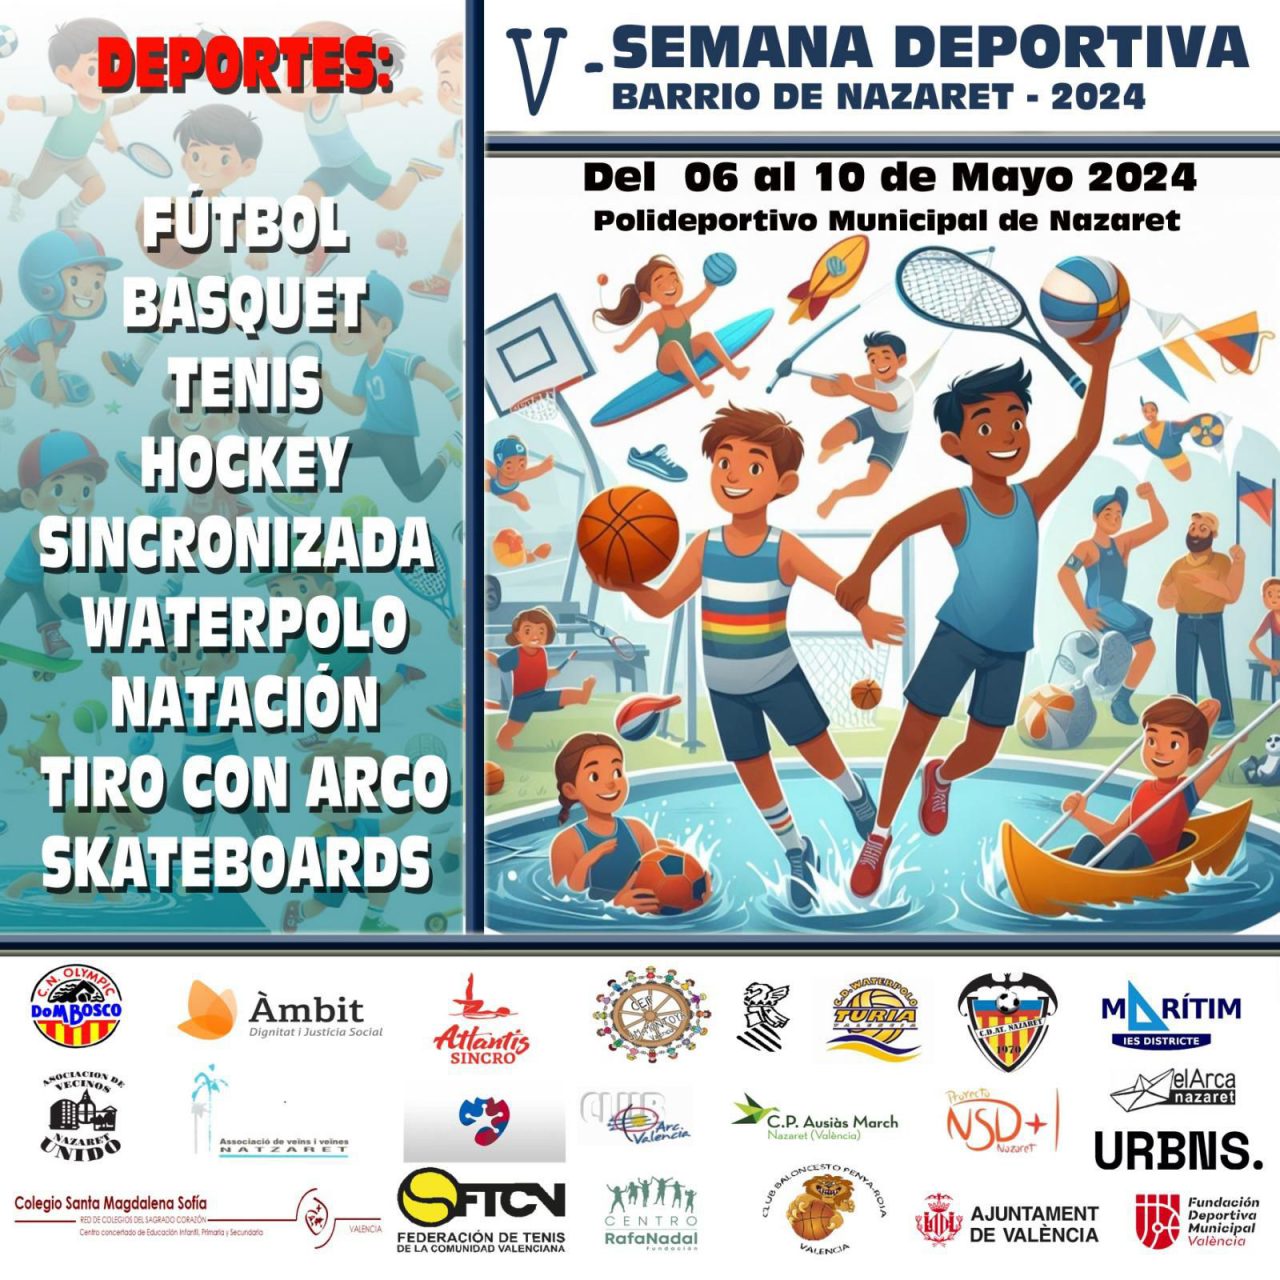 El barrio de Natzaret celebra su semana deportiva con la participación de 600 participantes